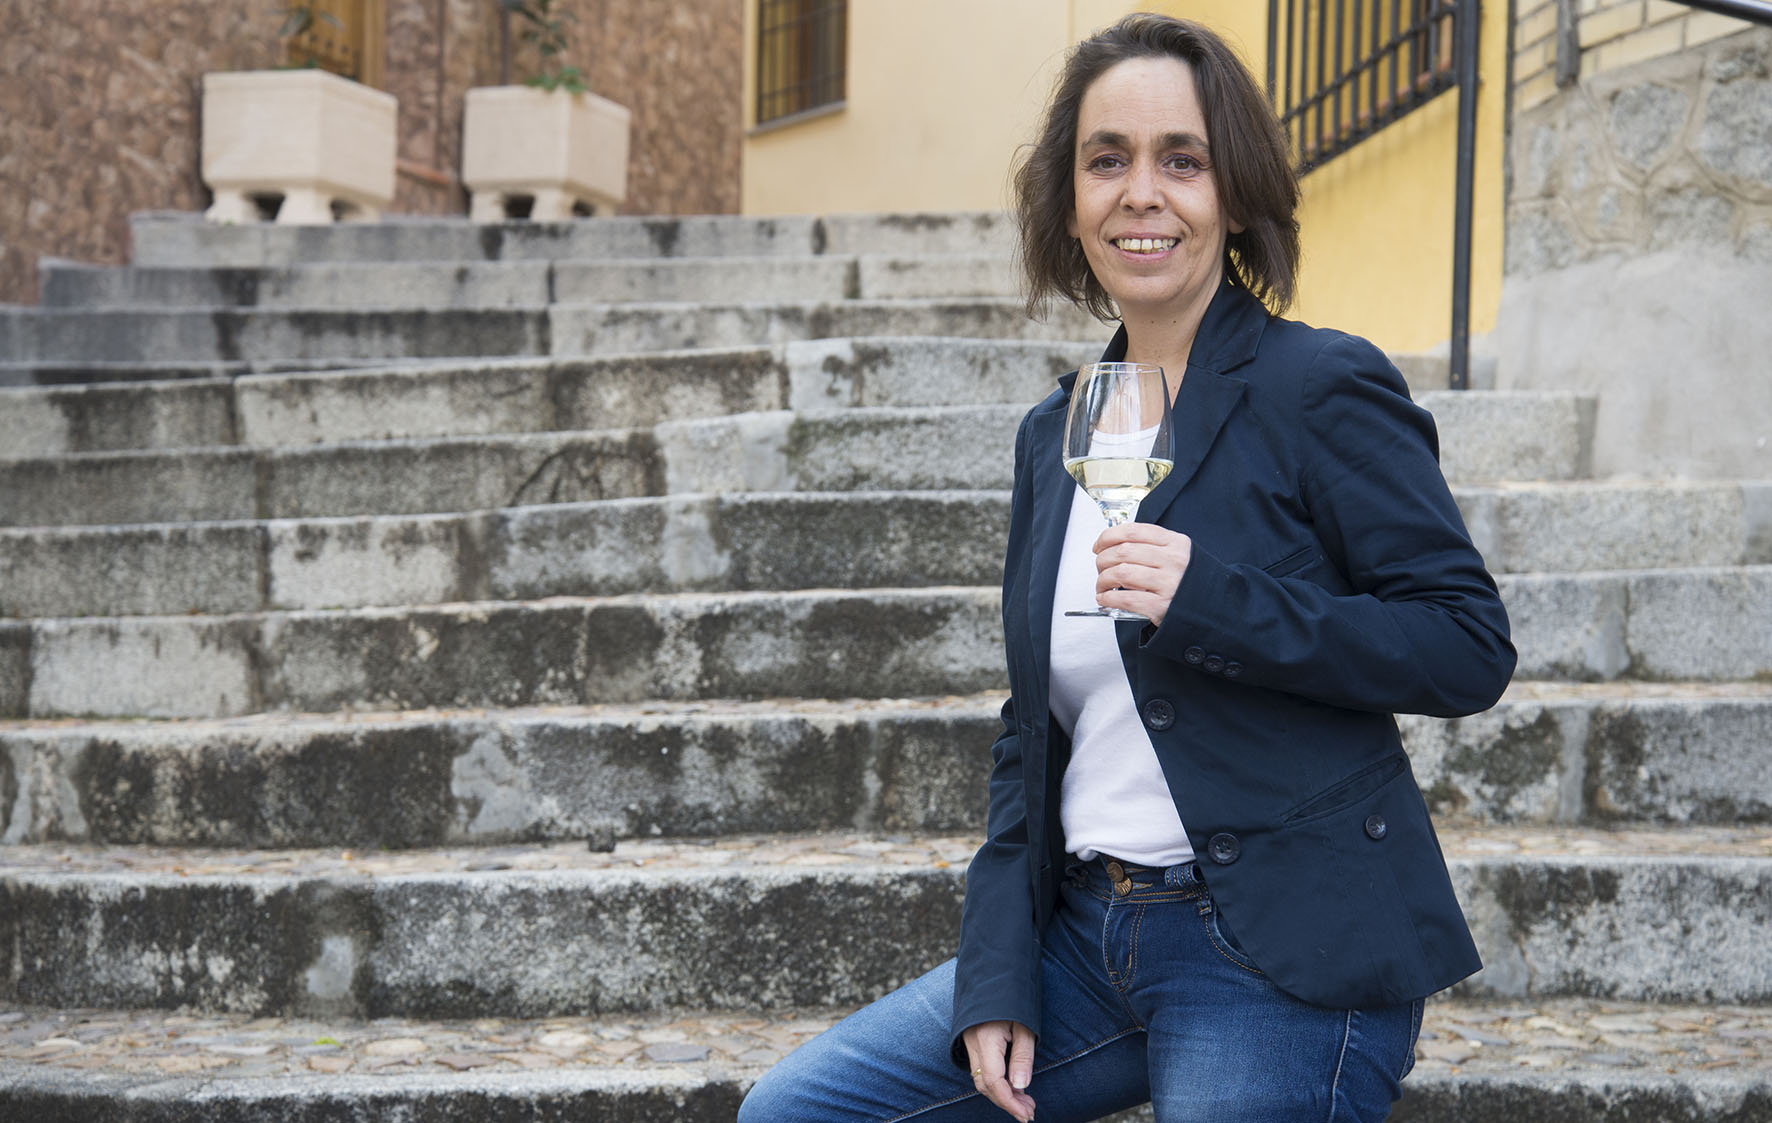 Helena Galán, concejala de Participación y Transparencia del Ayuntamiento de Toledo, posa para la guía "De vinos por Castilla-La Mancha".